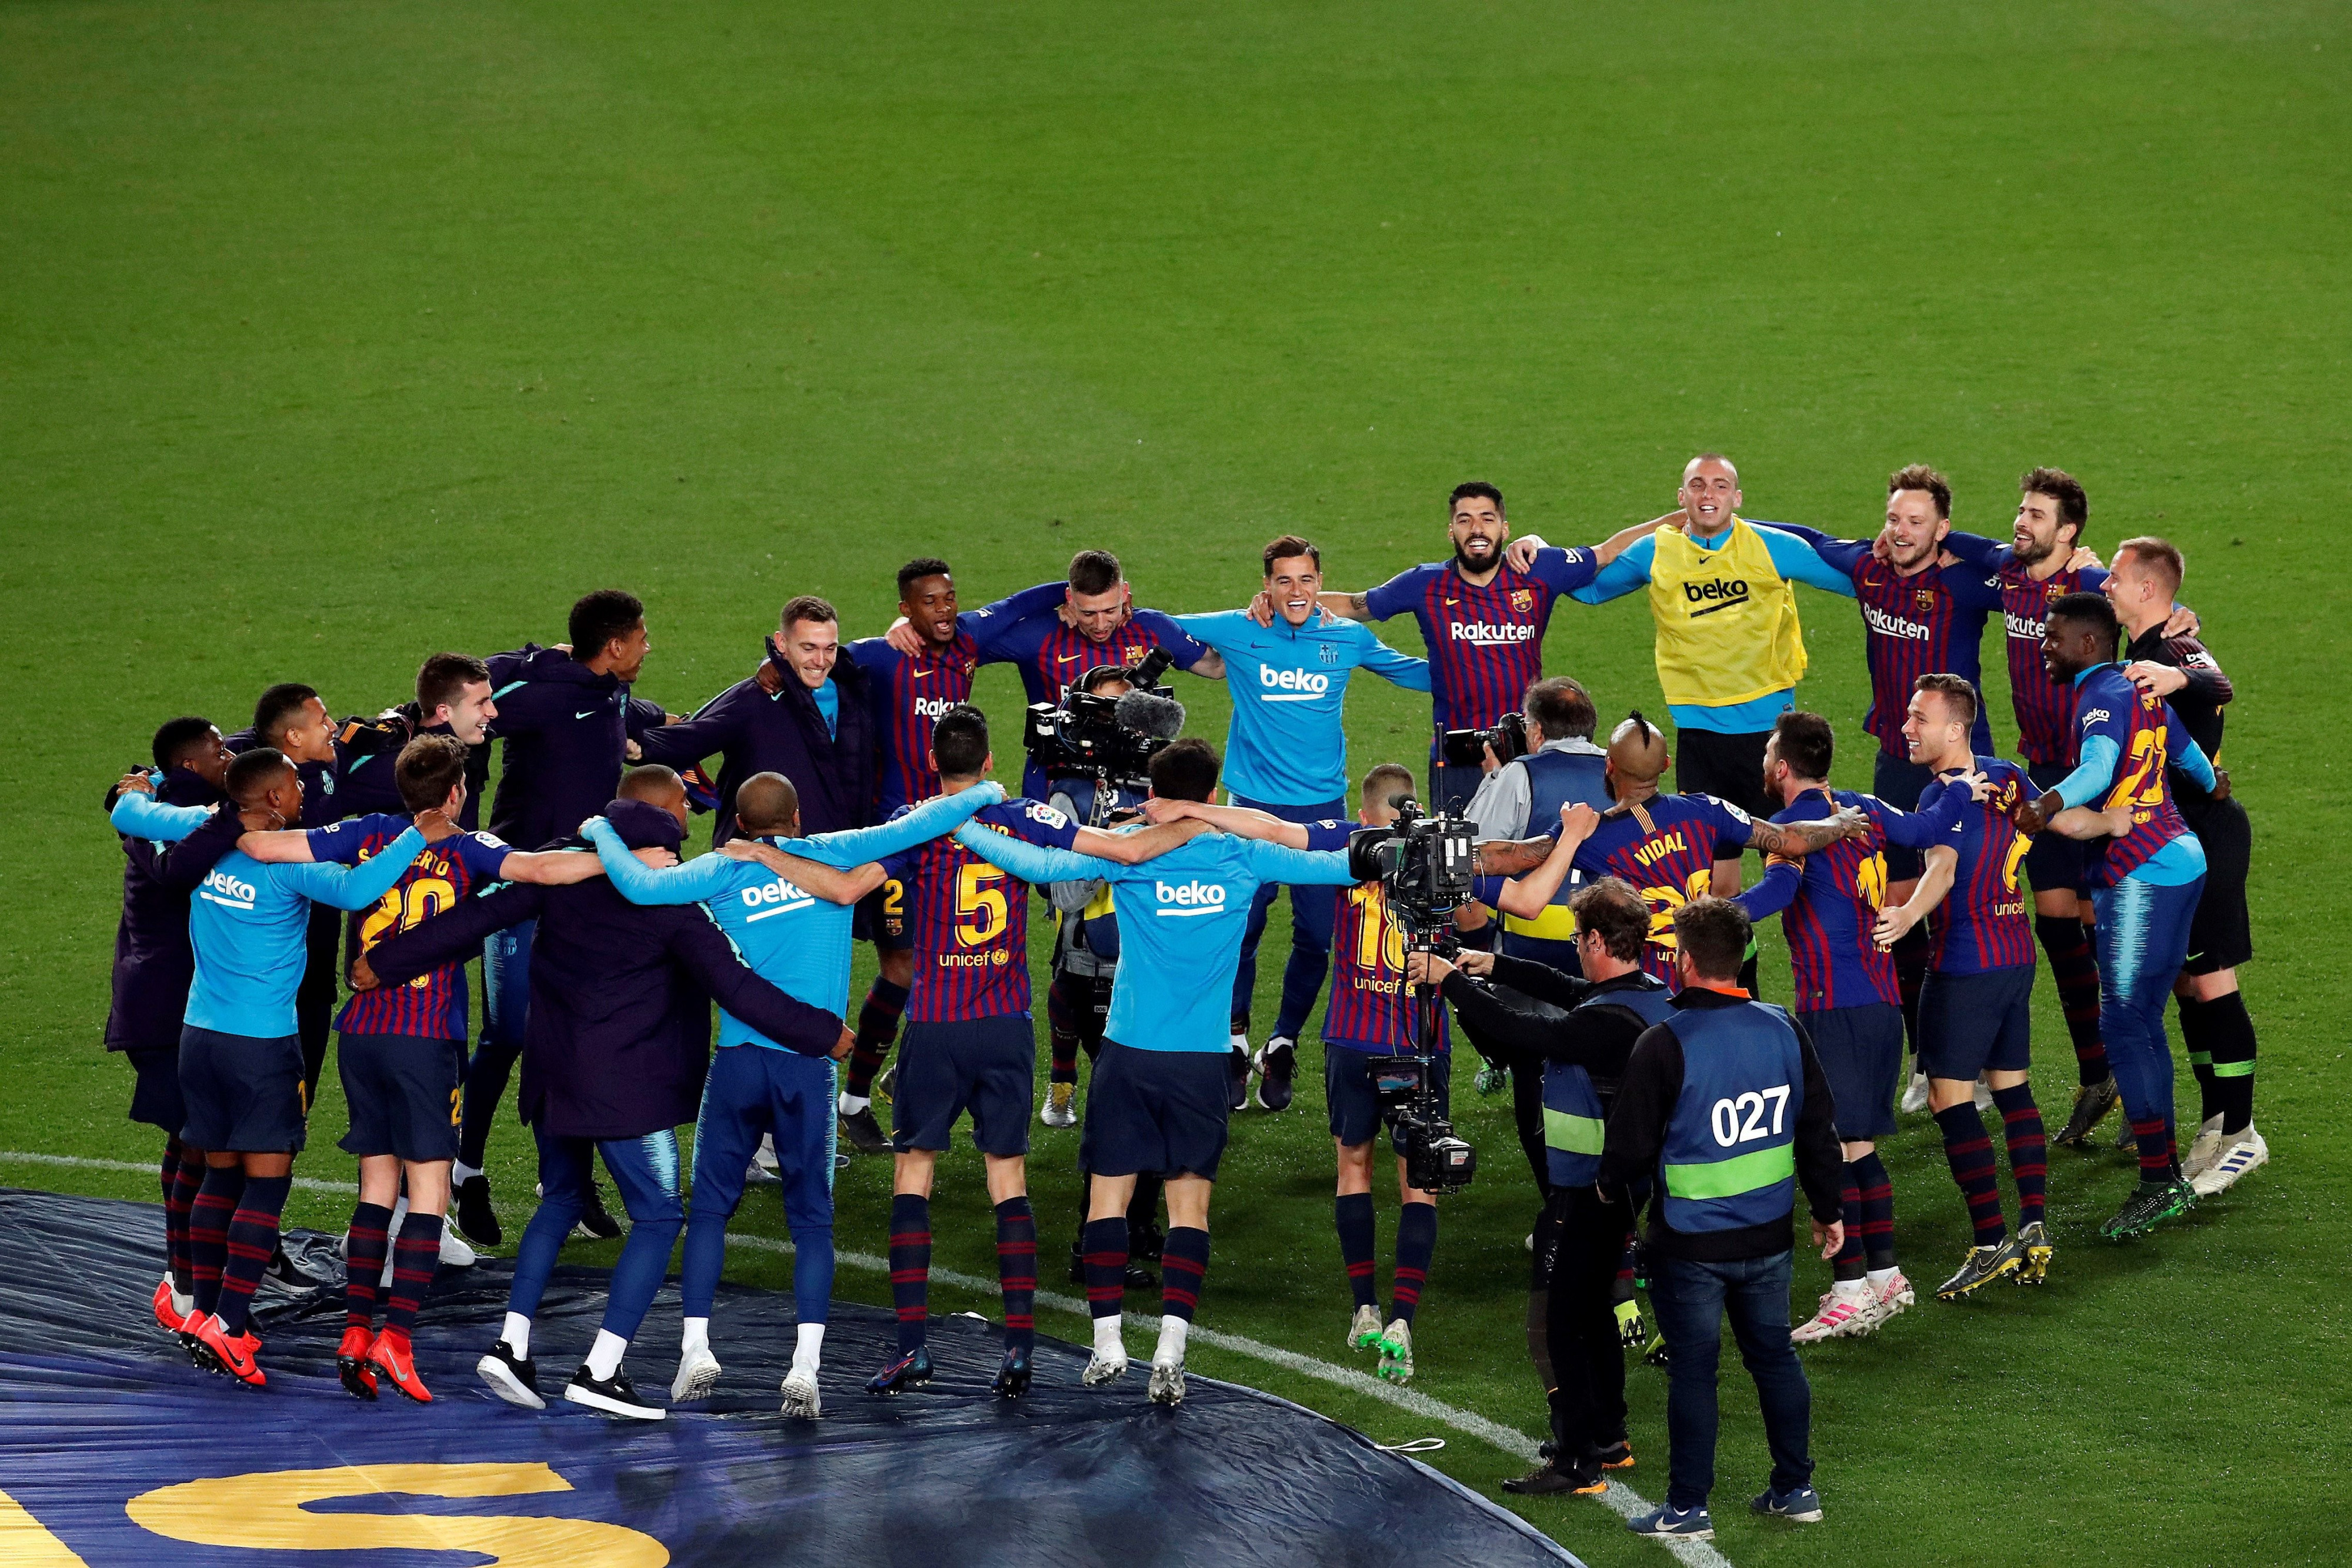 Los jugadores del Barça celebran el título de Liga de 2019 en el Camp Nou / EFE